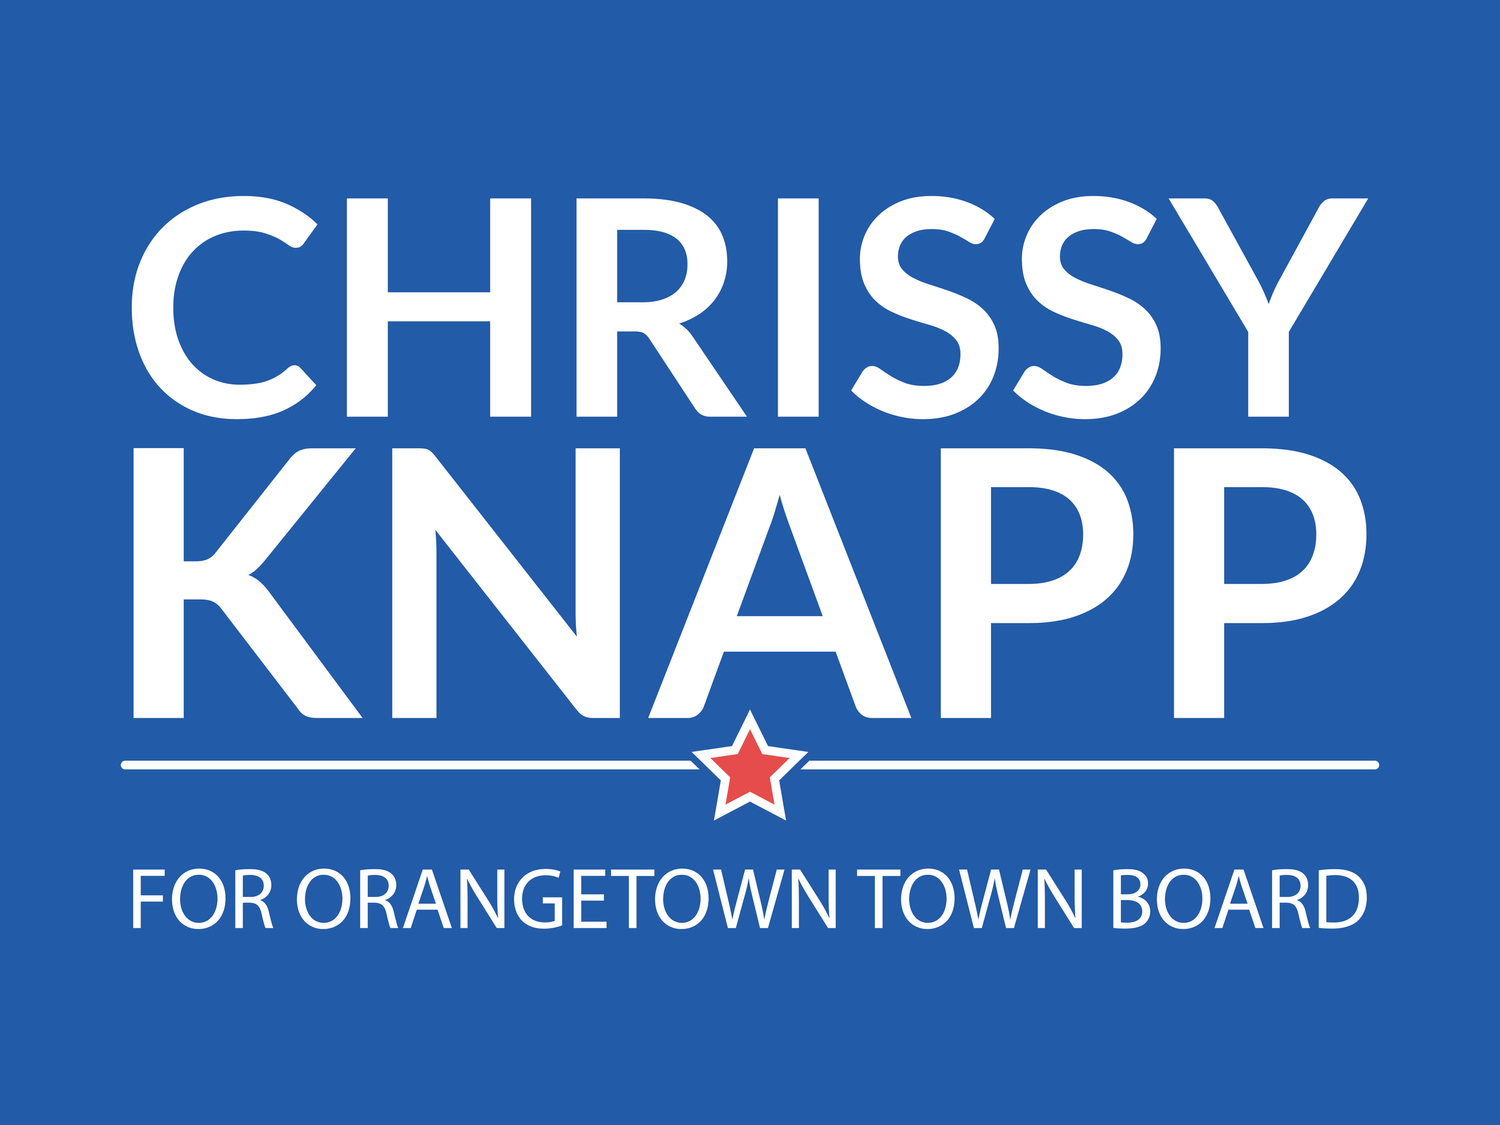 Vote Chrissy  on November 7th!